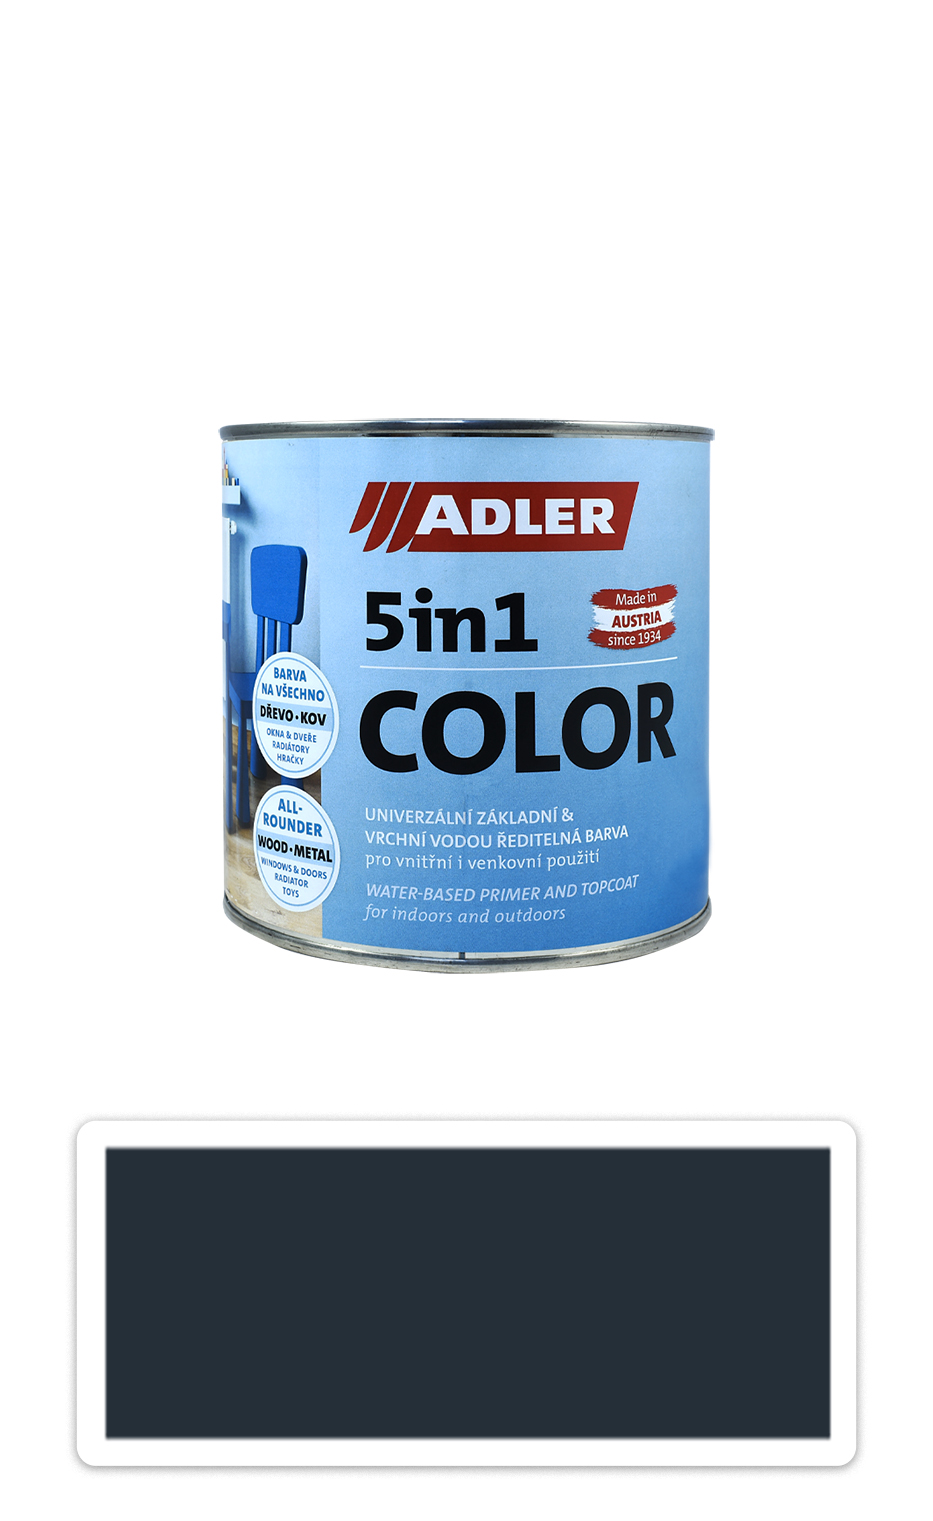 ADLER 5in1 Color - univerzální vodou ředitelná barva 0.75 l Anthrazitgrau/Antracitově šedá RAL 7016